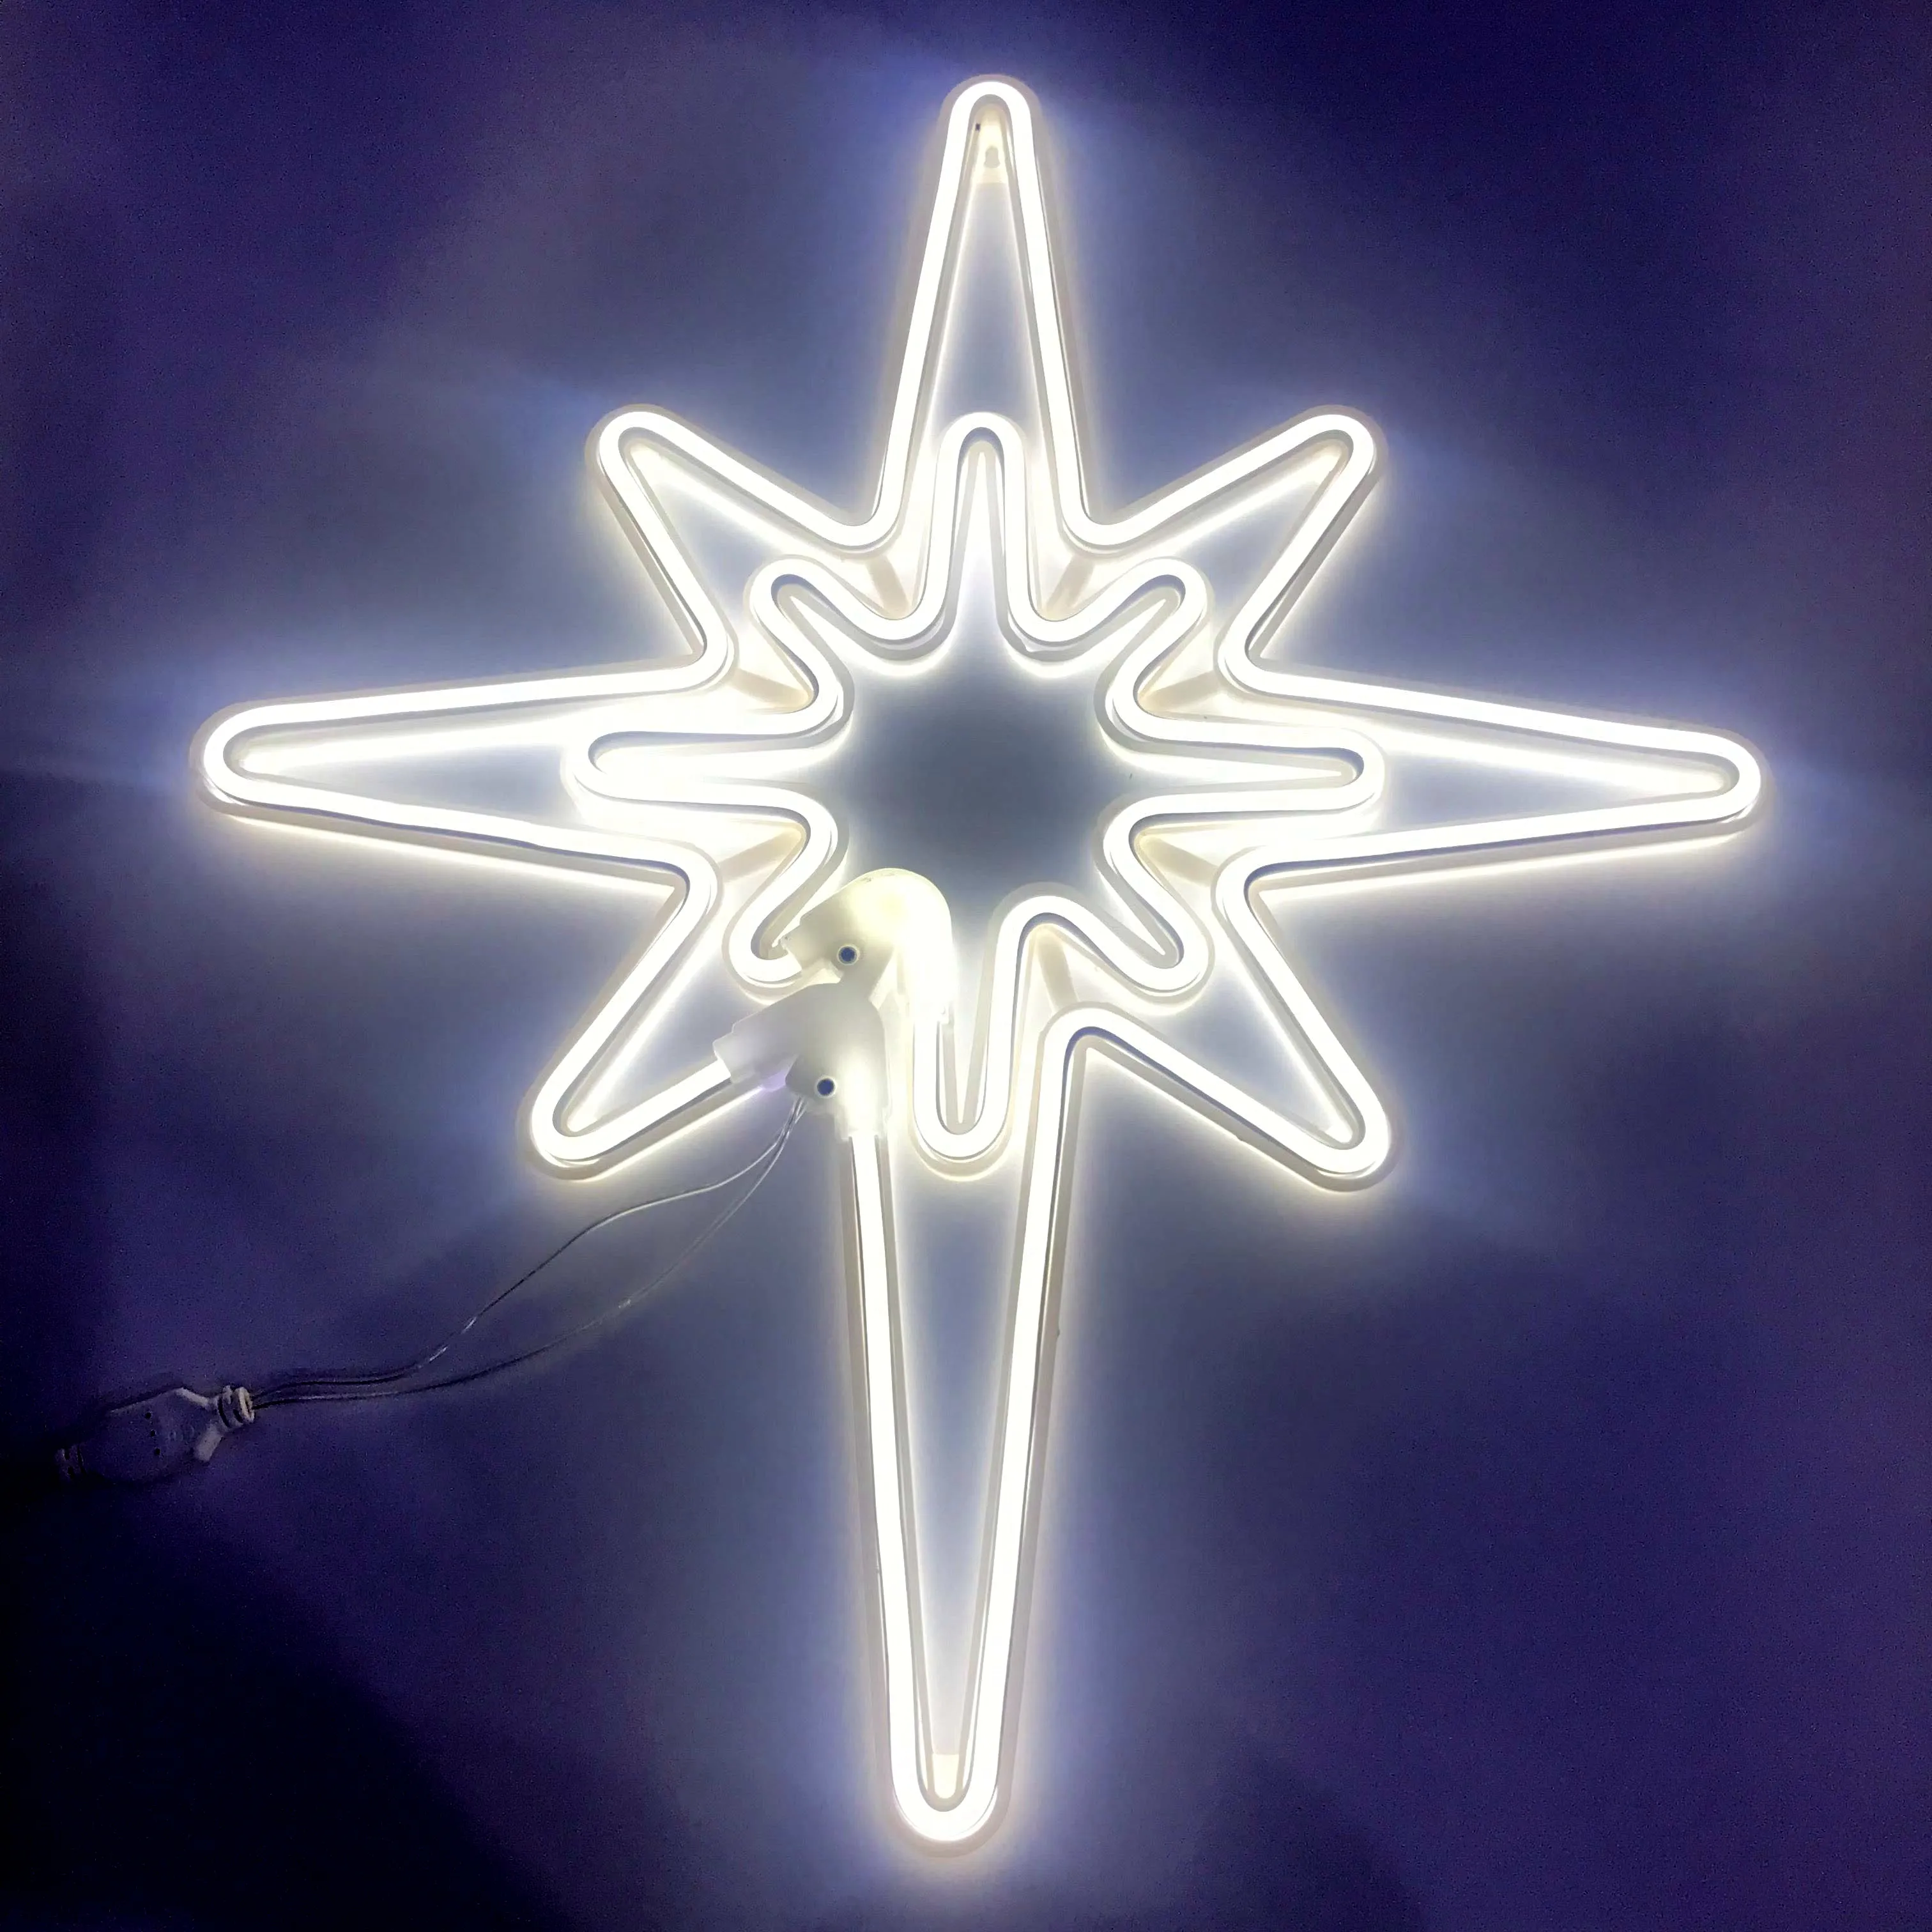 Lampu LED Dekorasi Dinding, Lampu Hias Dinding Neon Bintang Betlehem LED Kustom, Aksesori Rumah Pesta Liburan, Lampu Malam USB